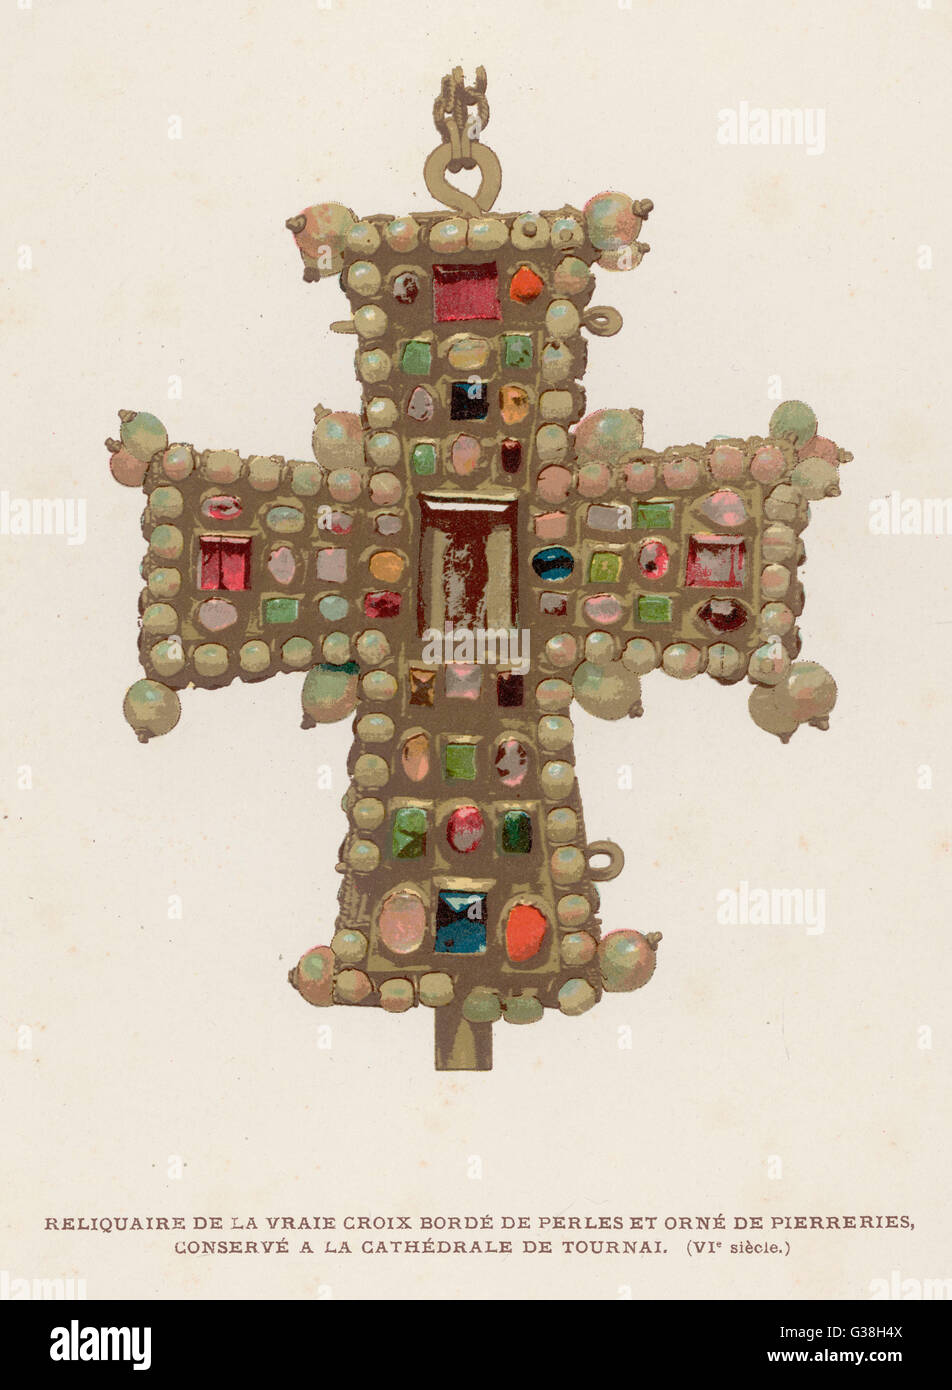 Teil des wahren Kreuzes, an dem Jesus gekreuzigt wurde, verziert mit Perlen und anderen Edelsteinen und erhalten in der Kathedrale in Tournai Datum: 6. Jahrhundert Stockfoto